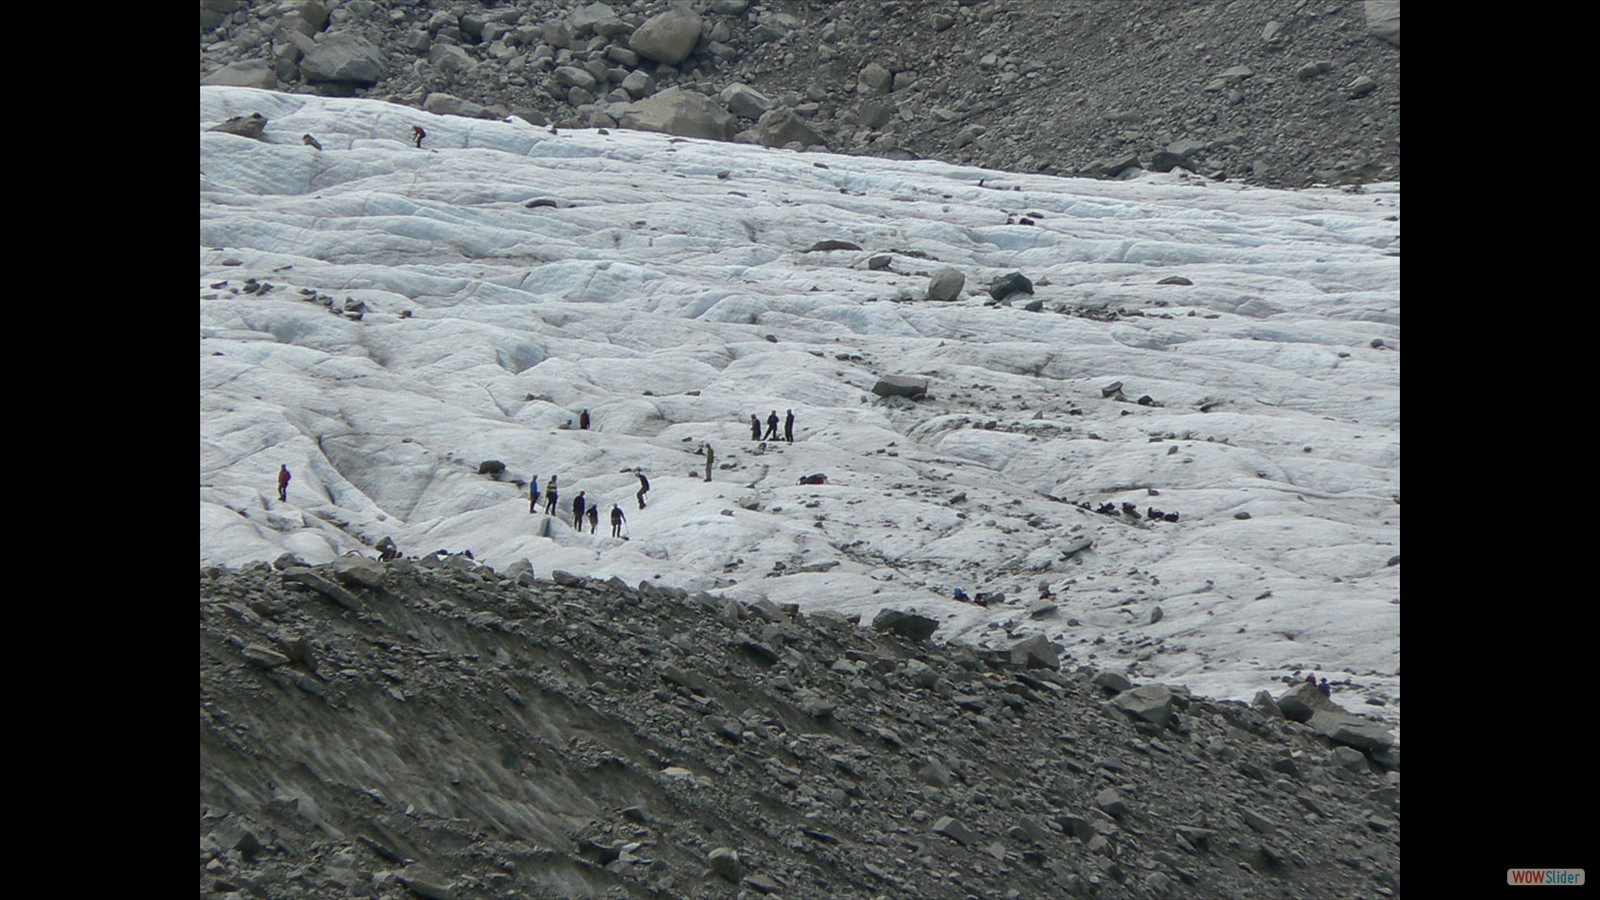 In de verte lopen aardig wat mensen op het ijs.